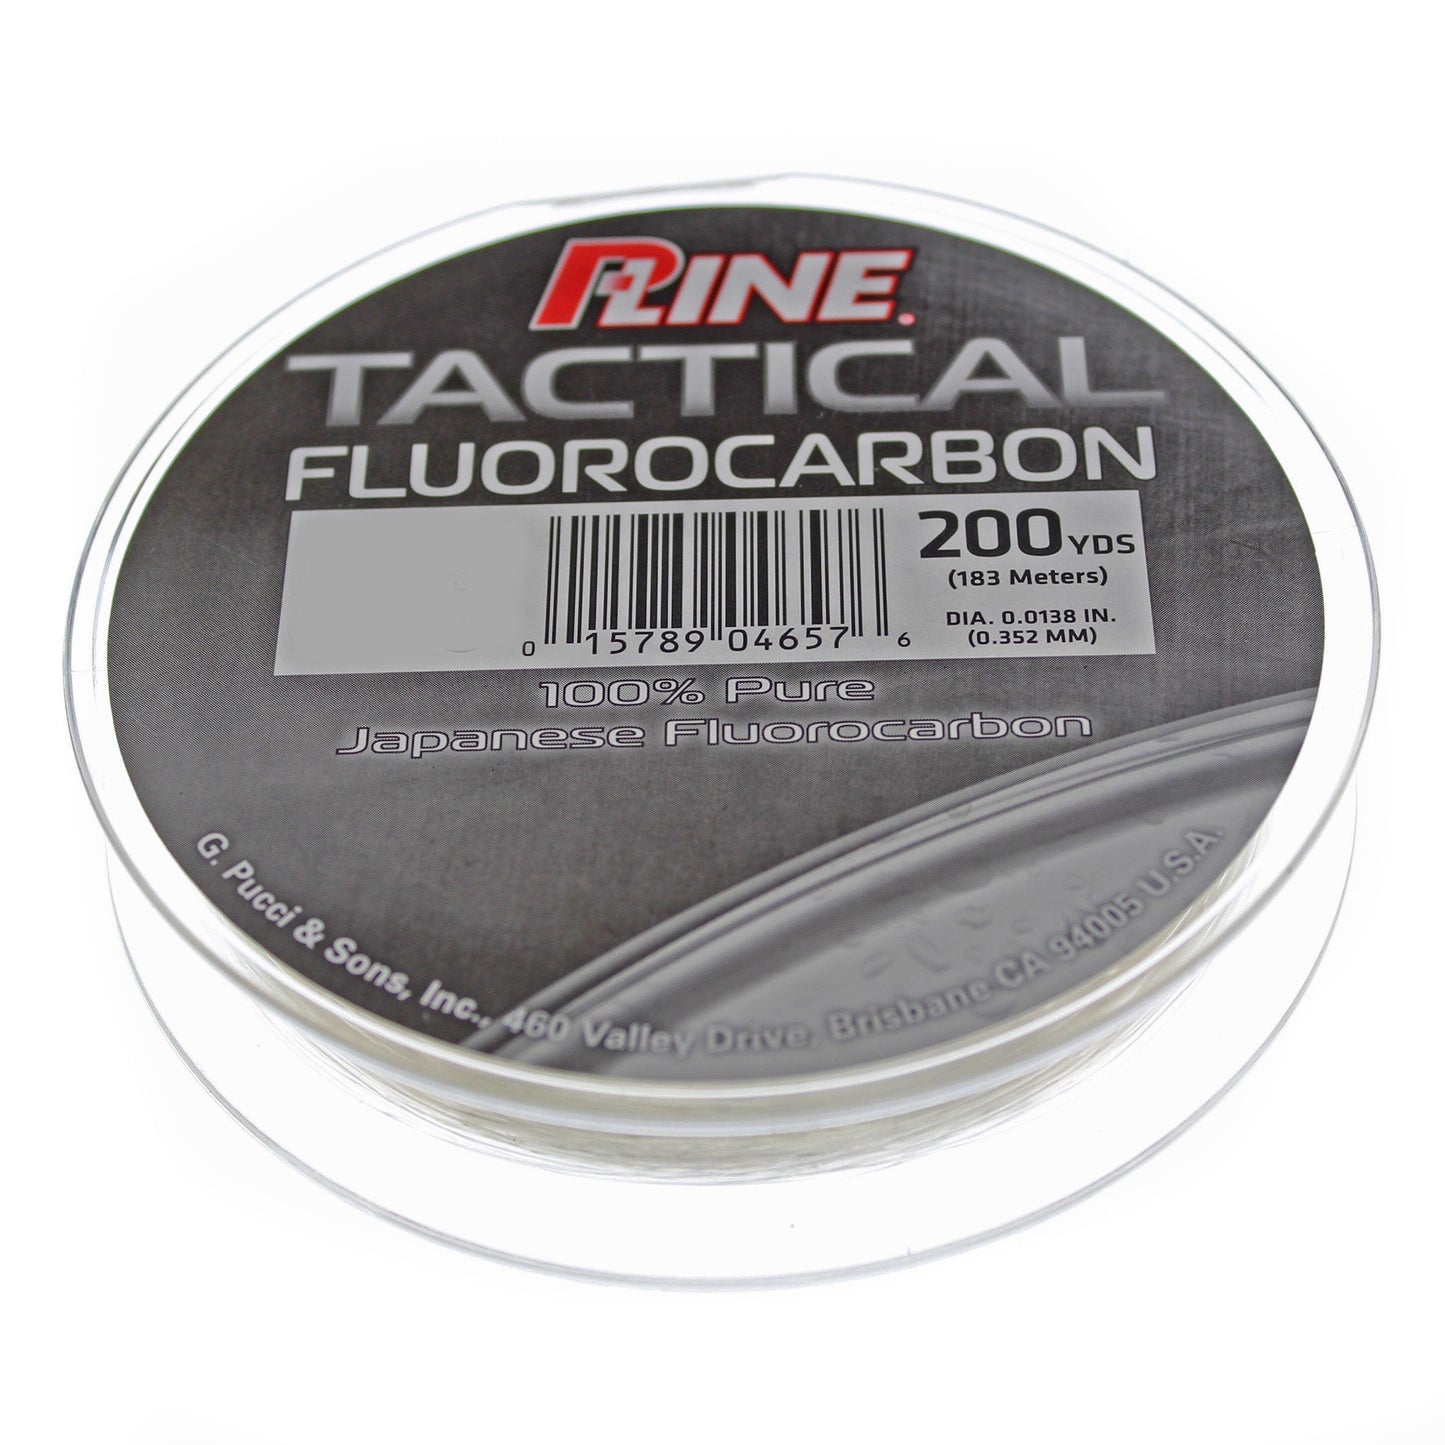 P-Line Tactical Fluorocarbon Line 6 lb